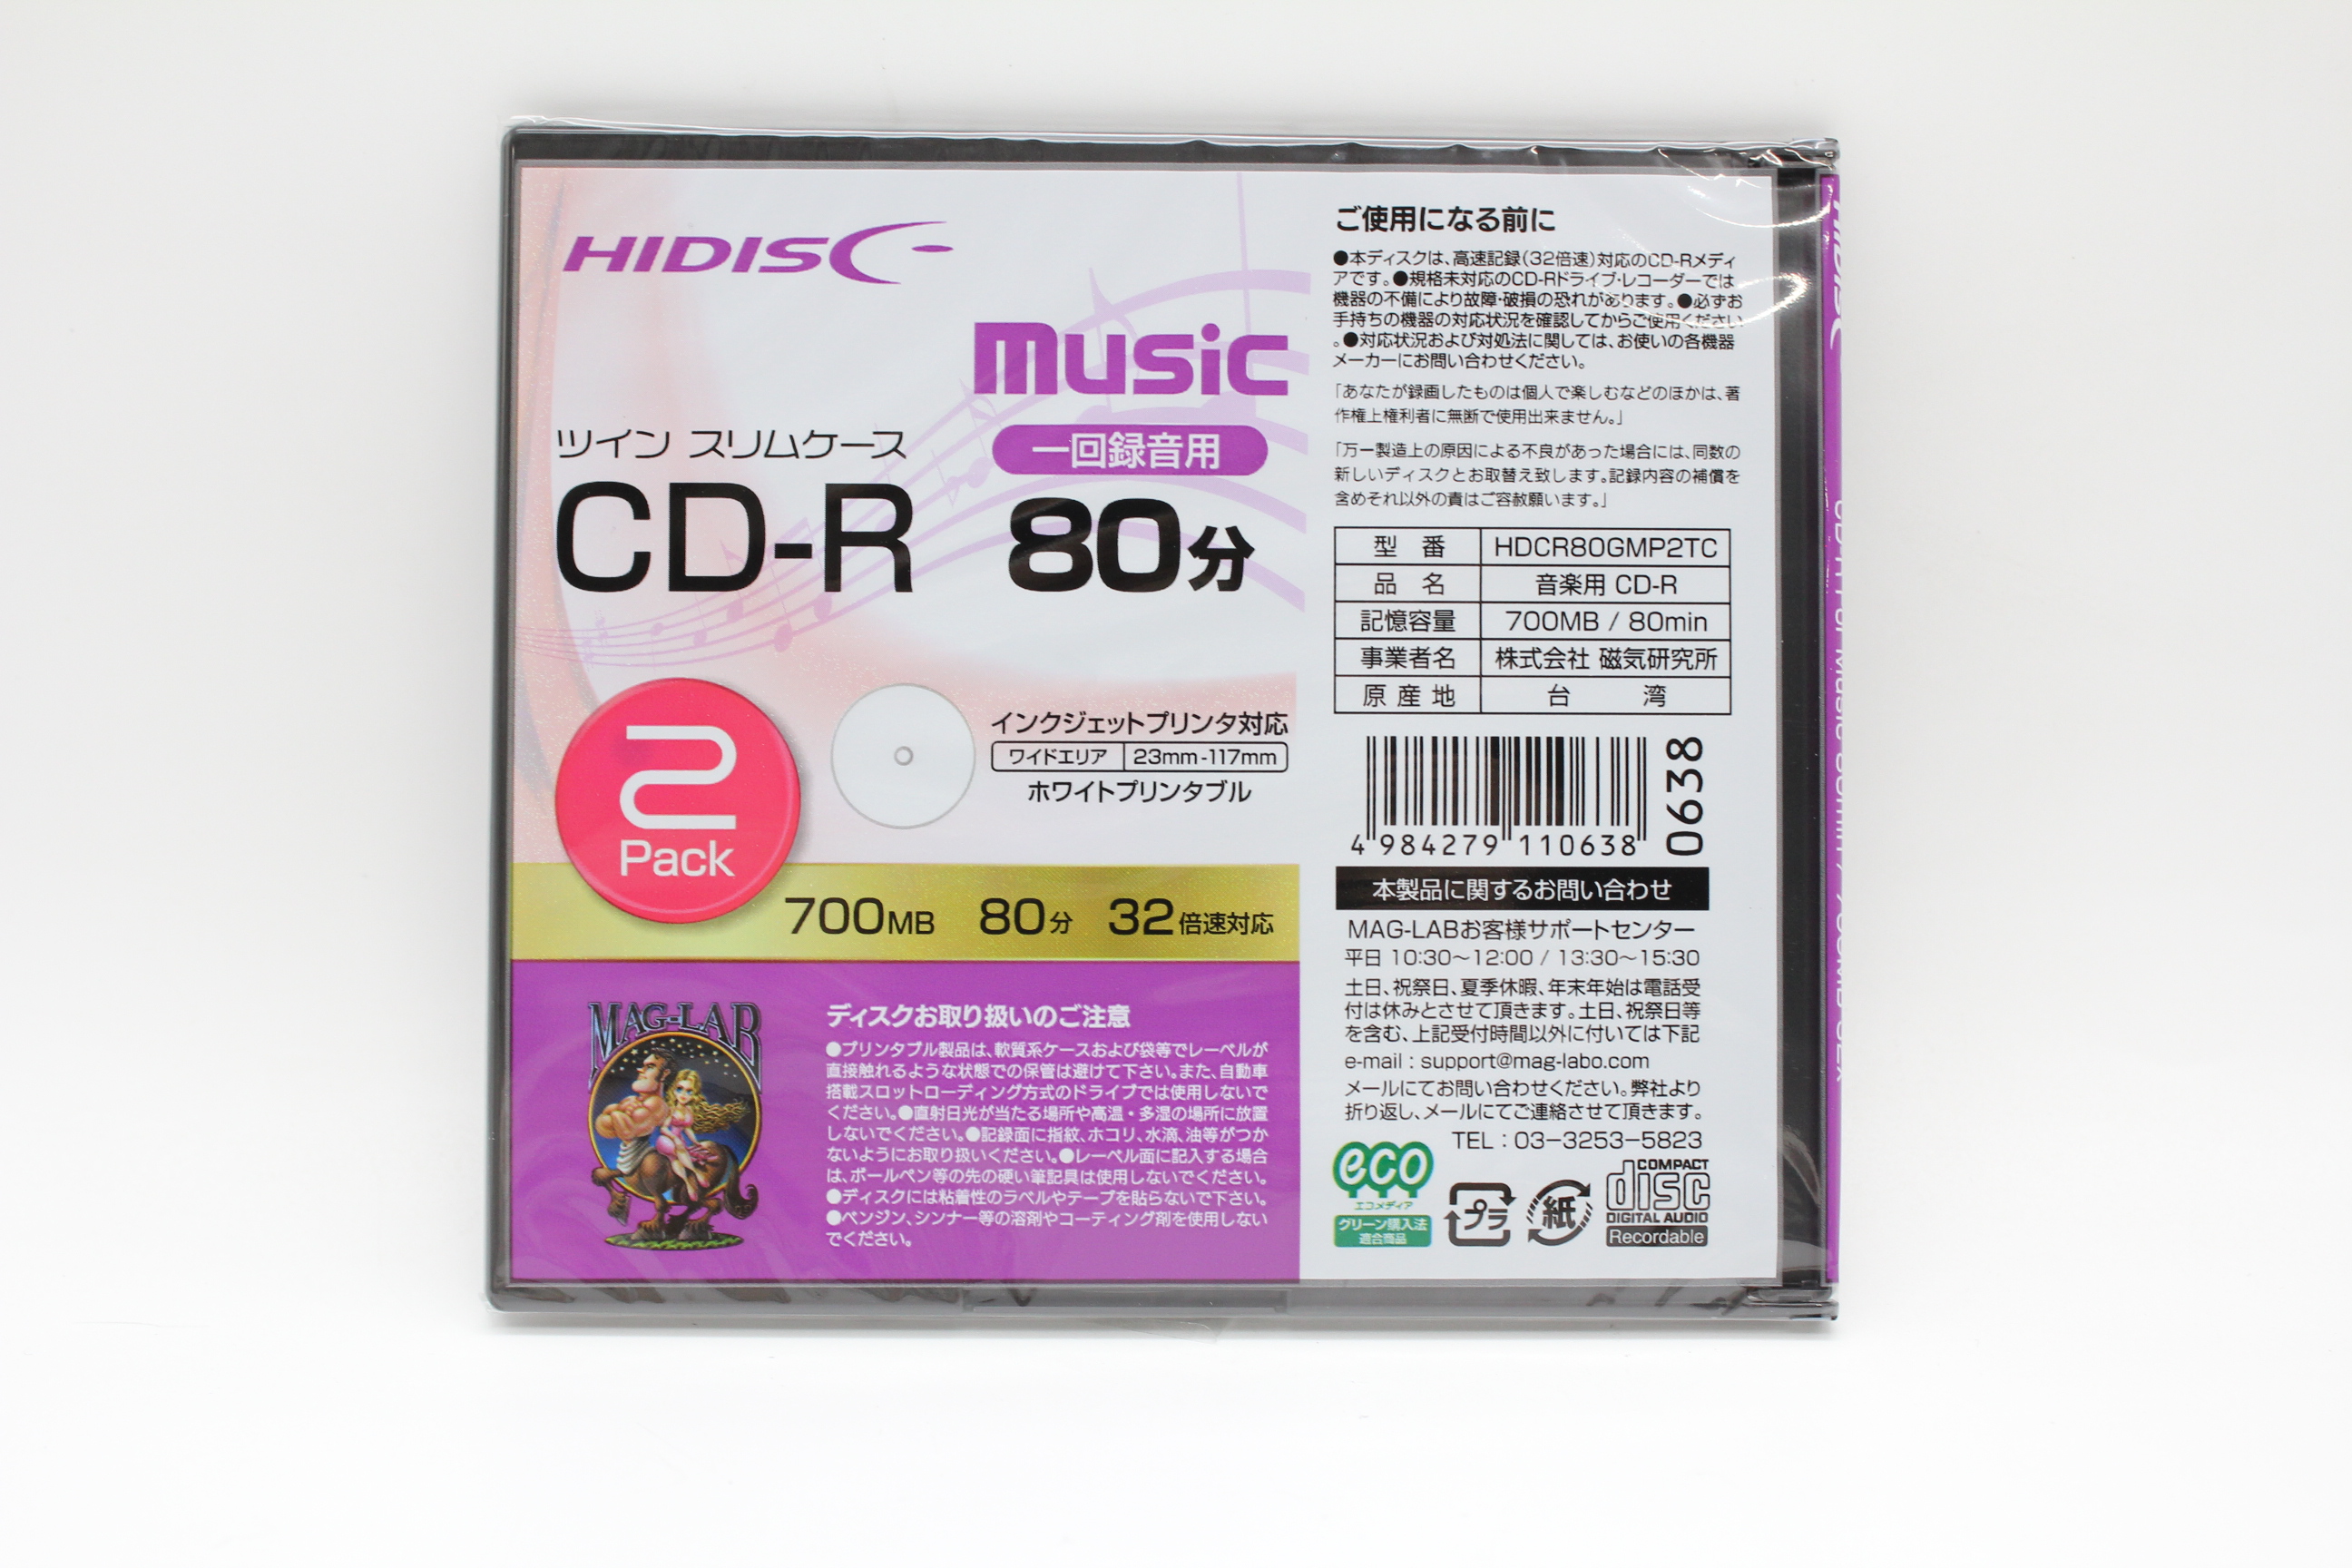 CD-R 80分 32倍速音楽用2枚入